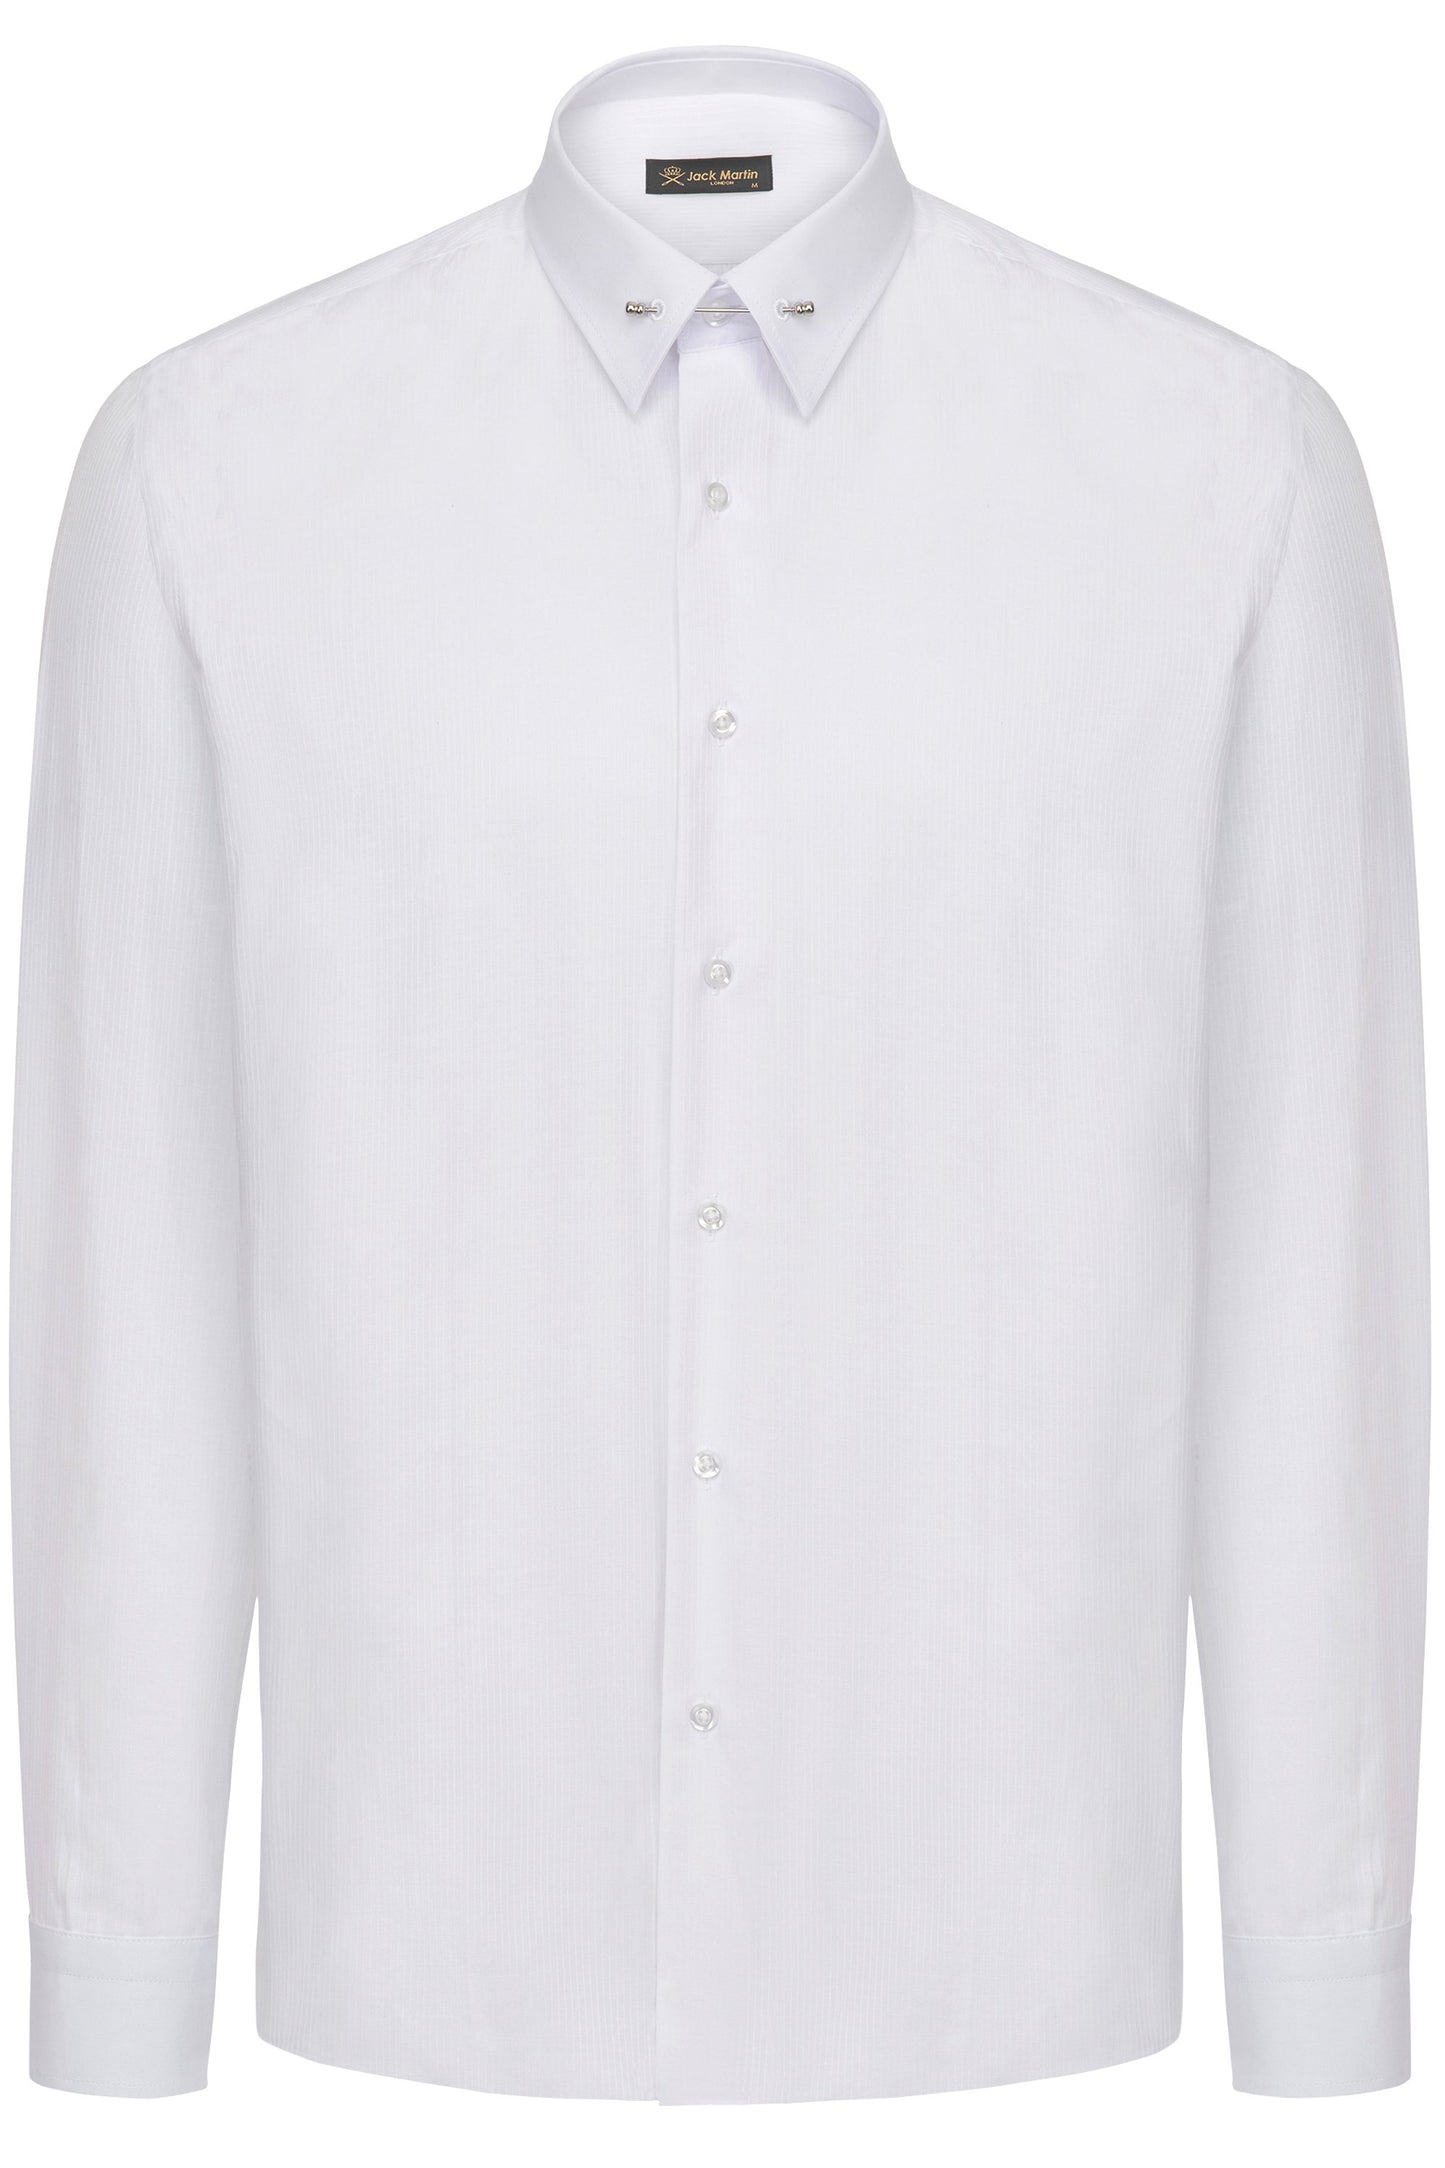 Luke White Subtle Stripe Pin Collar Long Sleeve Shirt